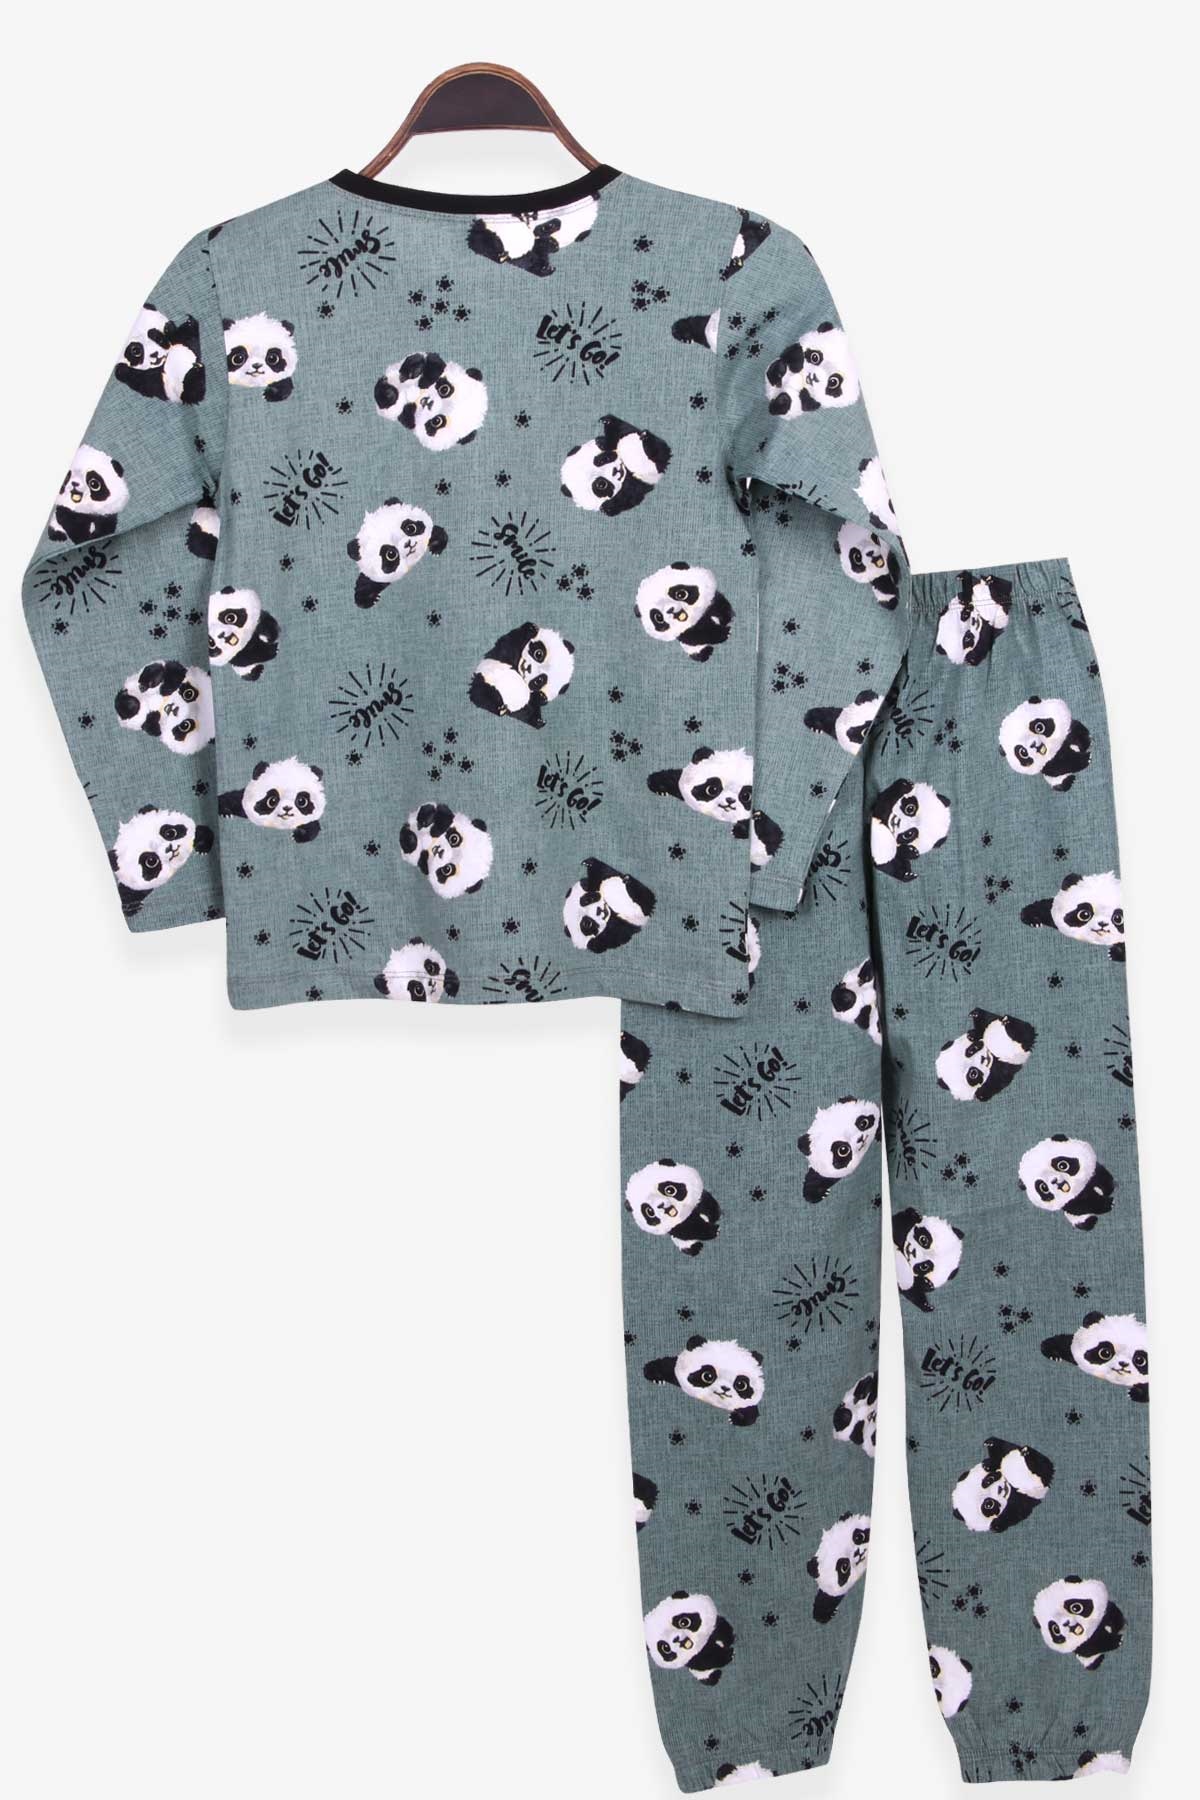 Erkek Çocuk Pijama Takımı Sevimli Panda Desenli Mint Yeşili (9 Yaş)